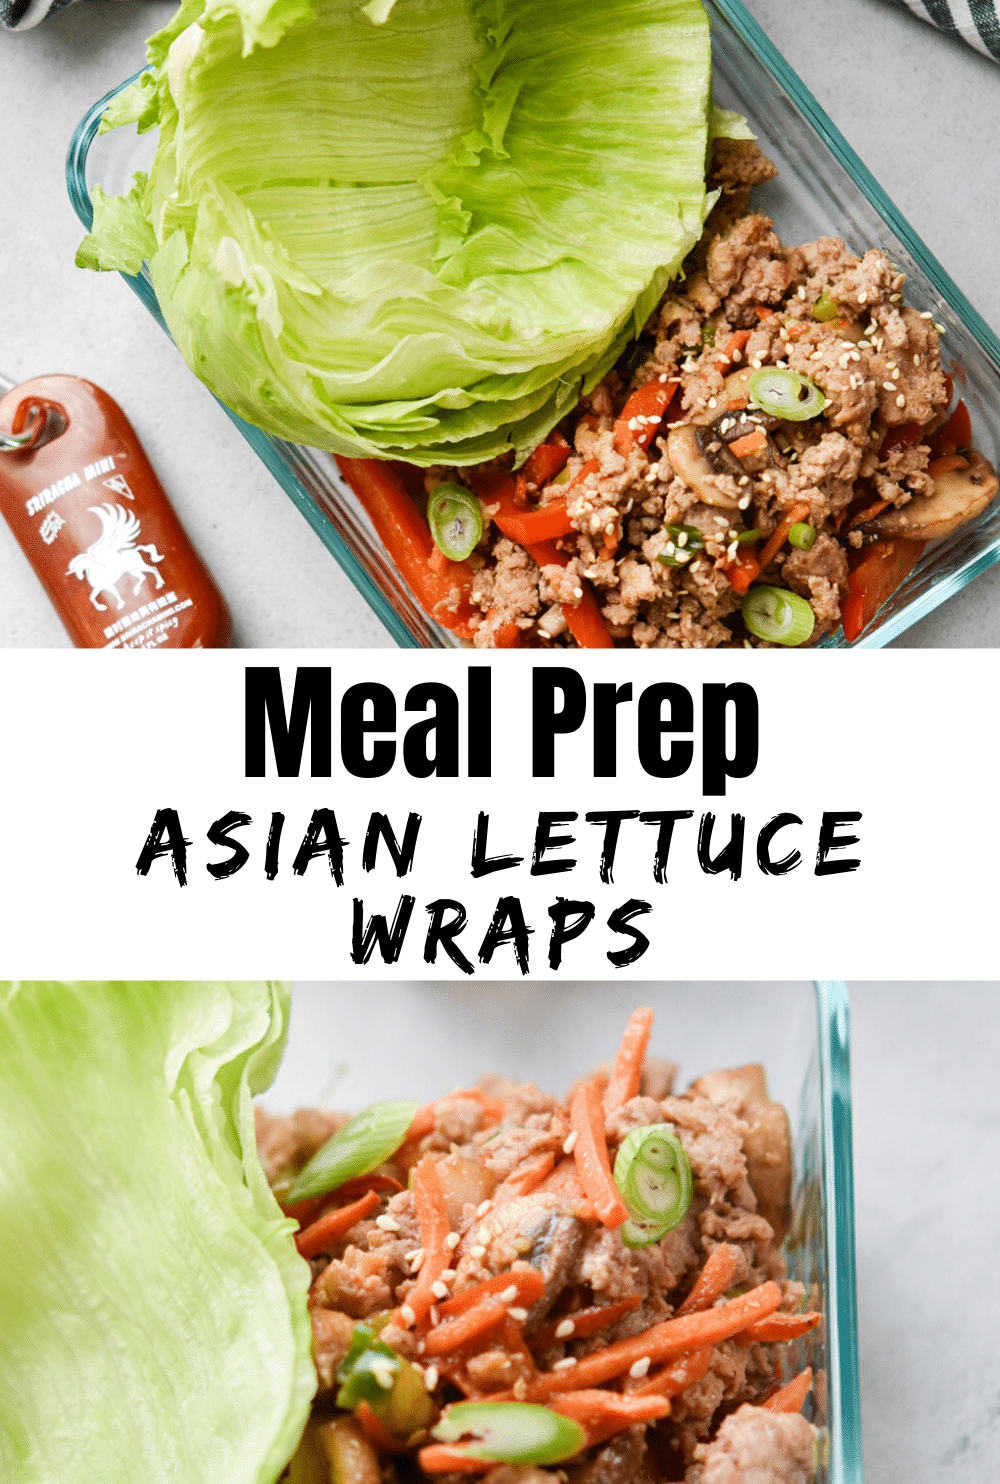 Meal Prep Asian Lettuce Wraps